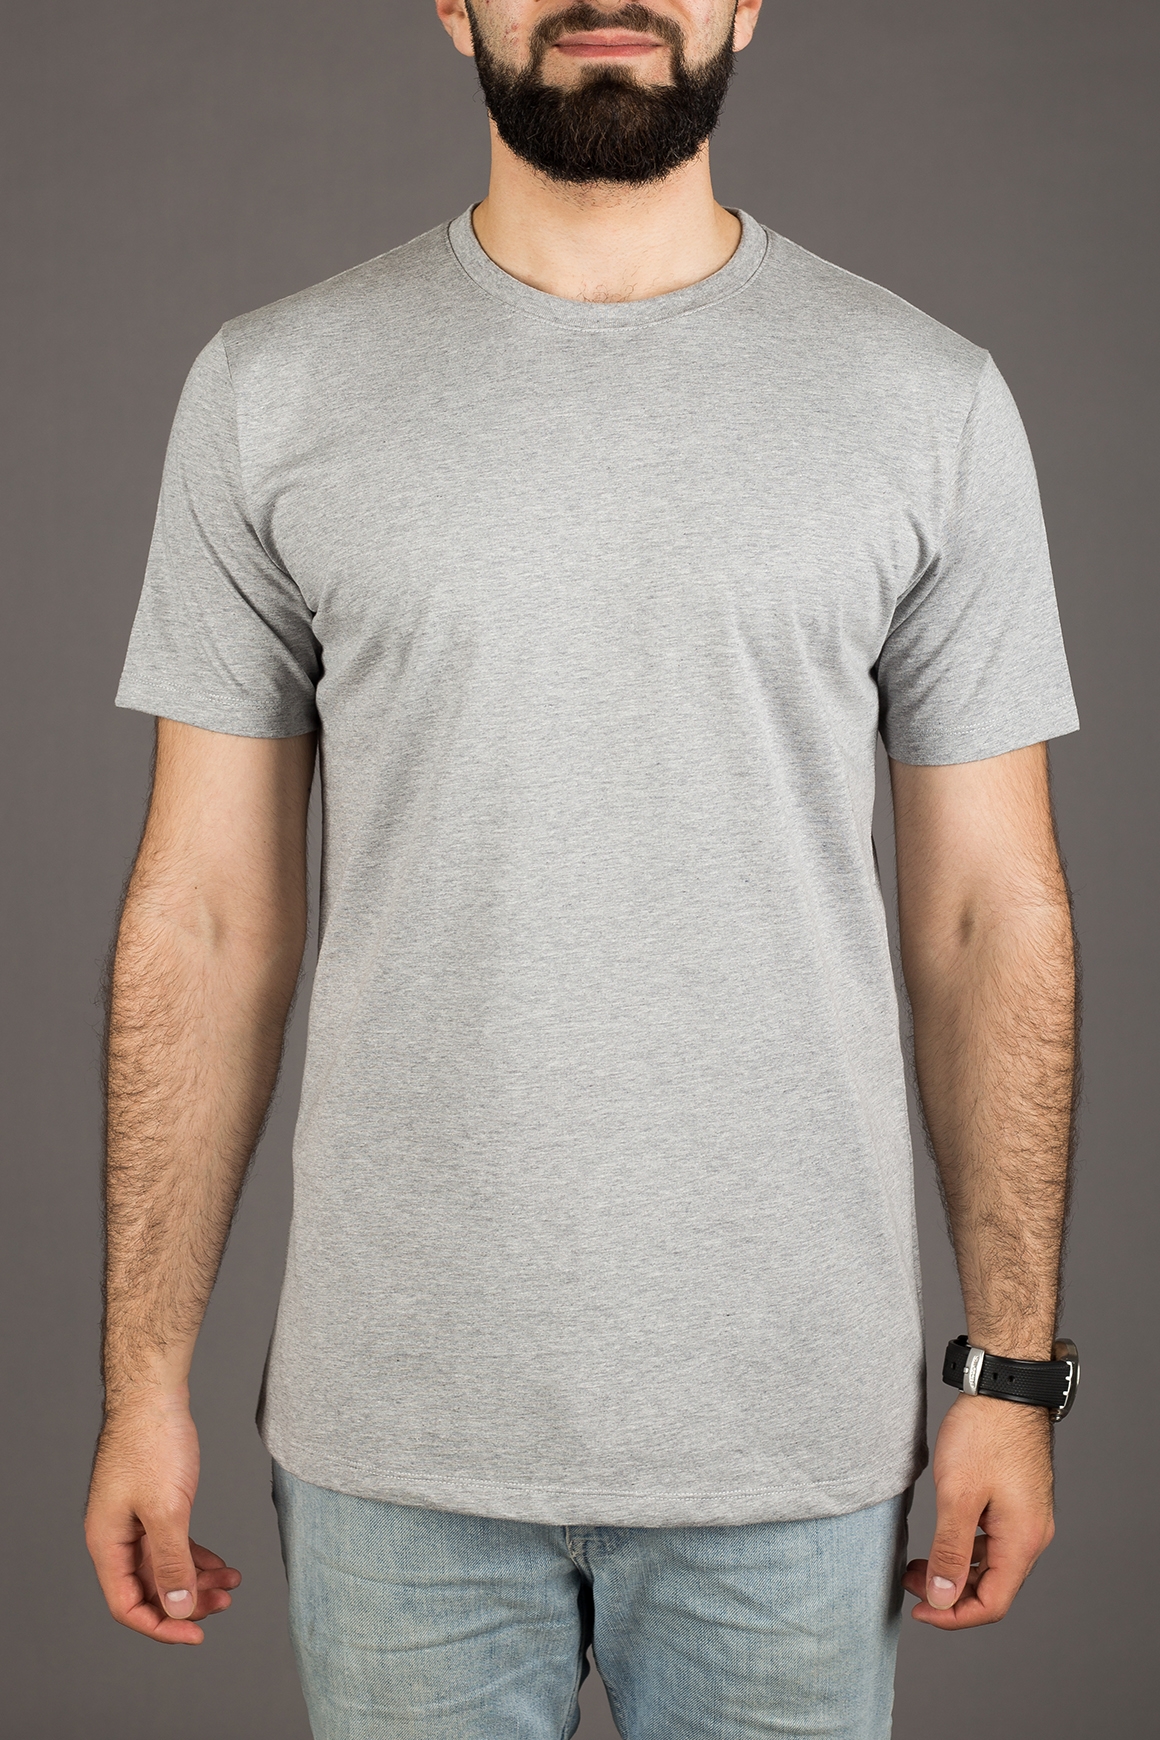 Gentleman Store - Poriadne tričko John & Paul - svetlo šedé - John & Paul -  Tričká - Oblečenie